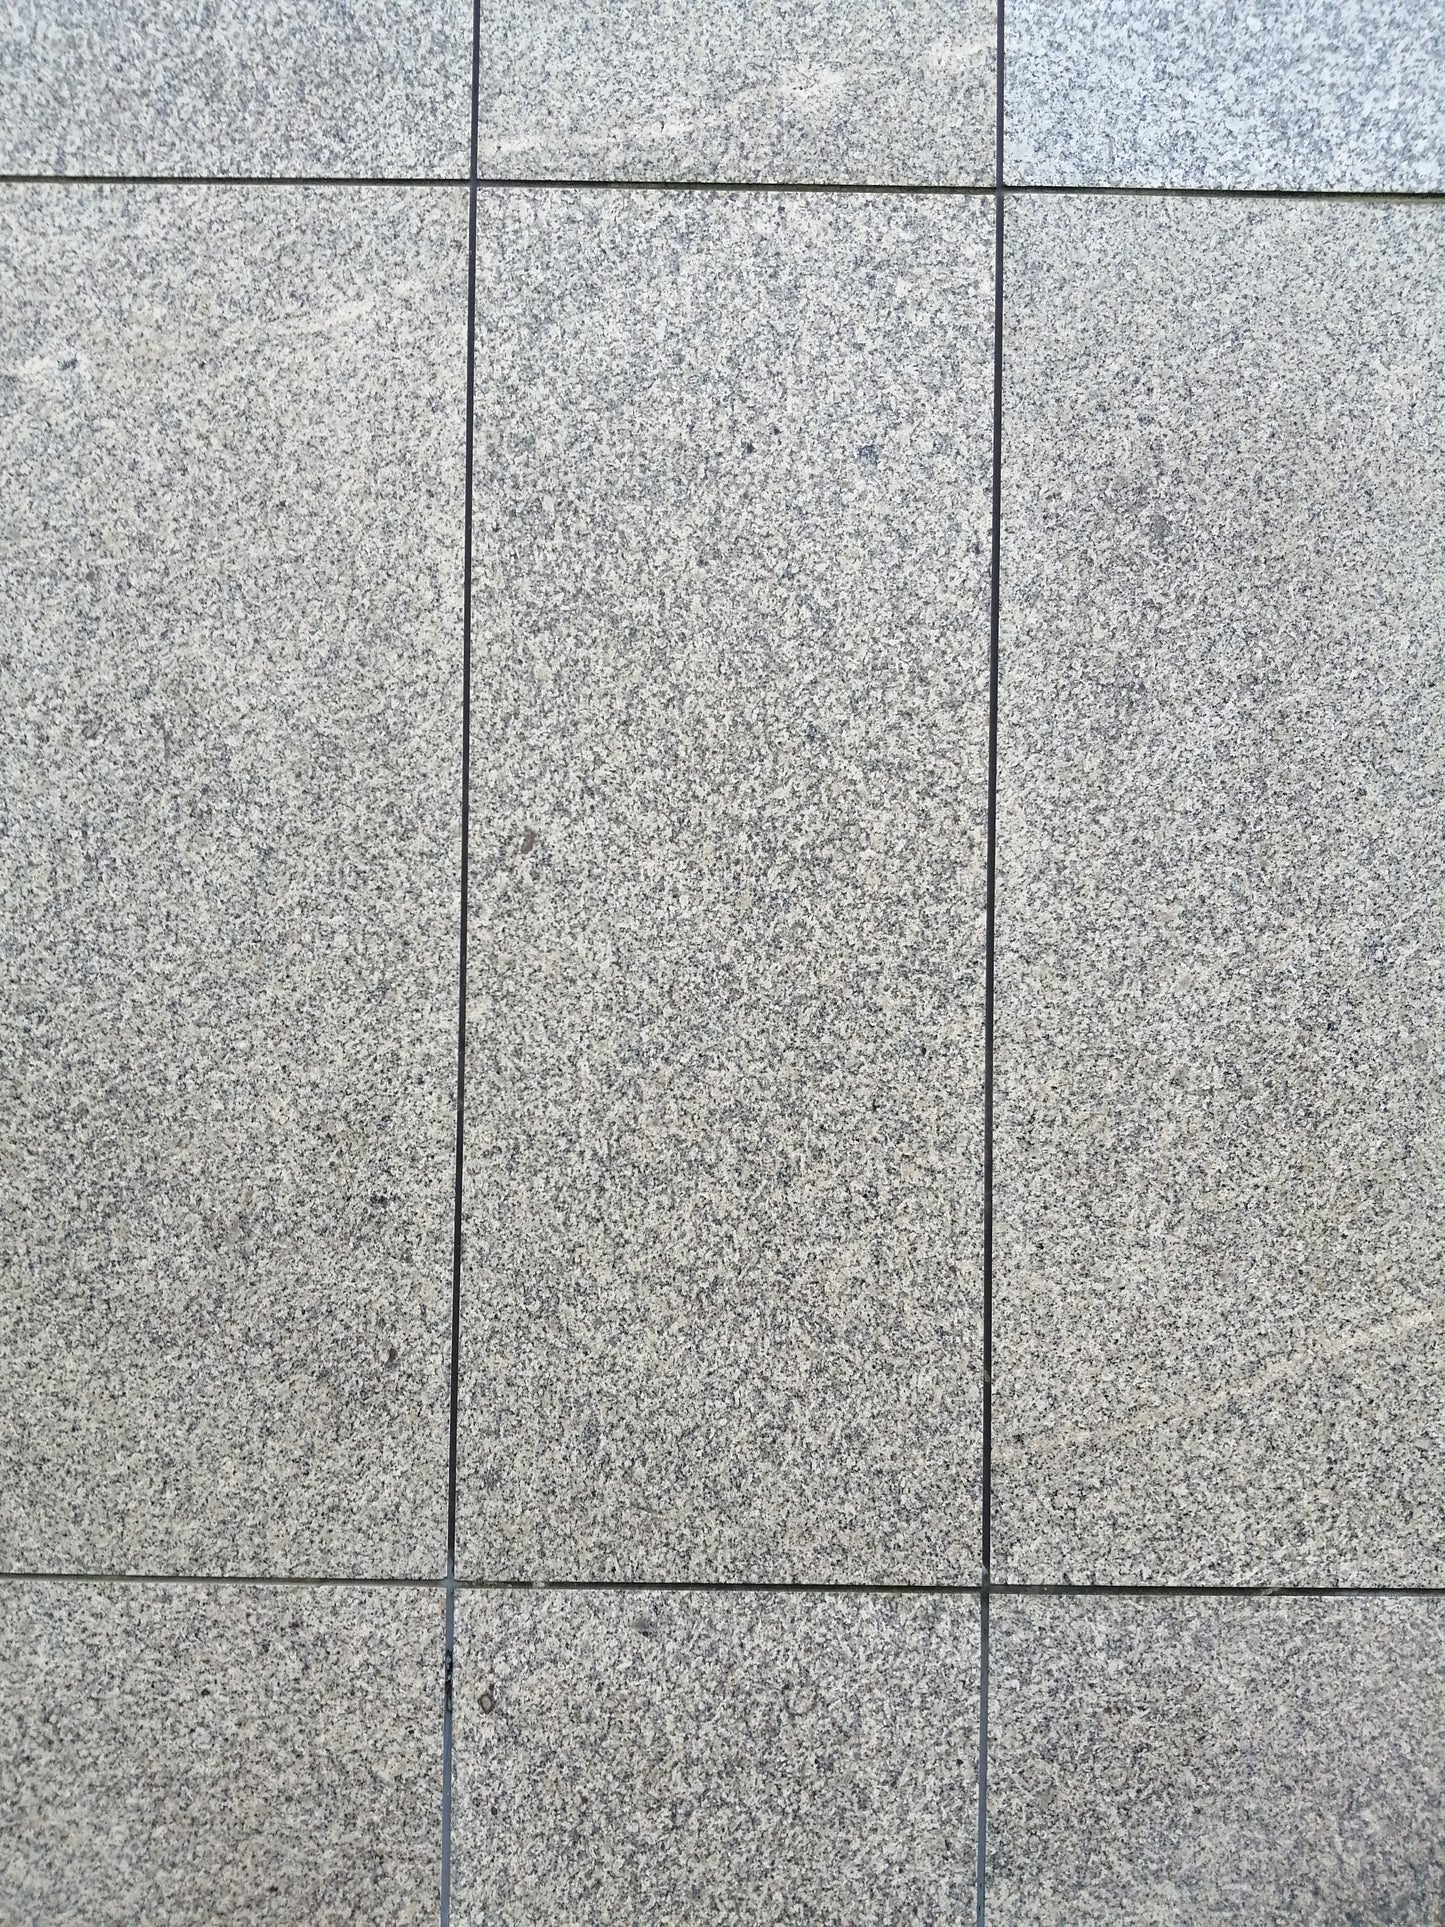 Granitstein Bianco Sardo Fassadenplatten schmale Elemente